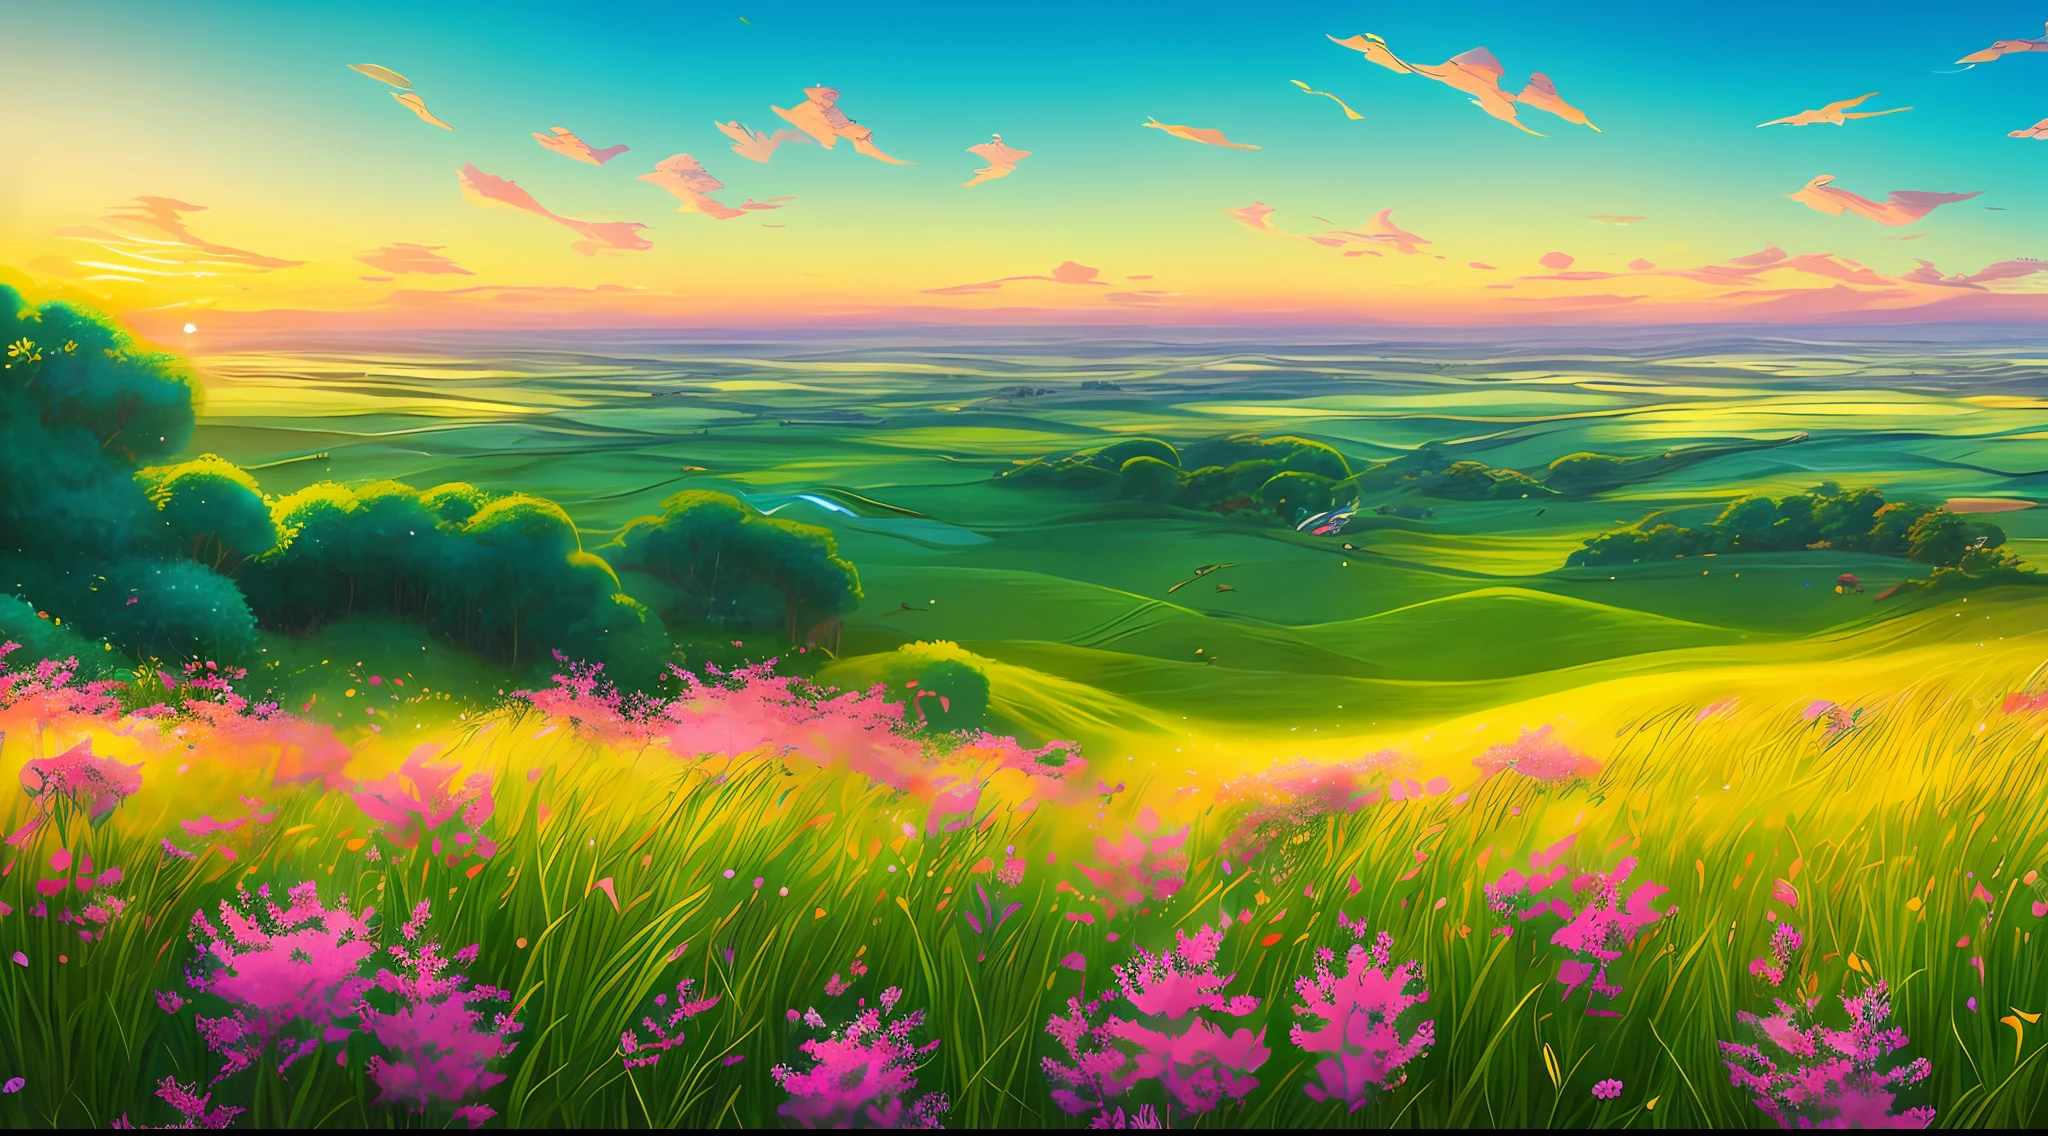 Qualidade de arte original, Imagem de corpo inteiro, estilo de animação dos personagens da Disney, imagens de um vasto campo com grama verdejante e flores coloridas. A câmera percorre lentamente o campo, transmitindo uma sensação de renovação